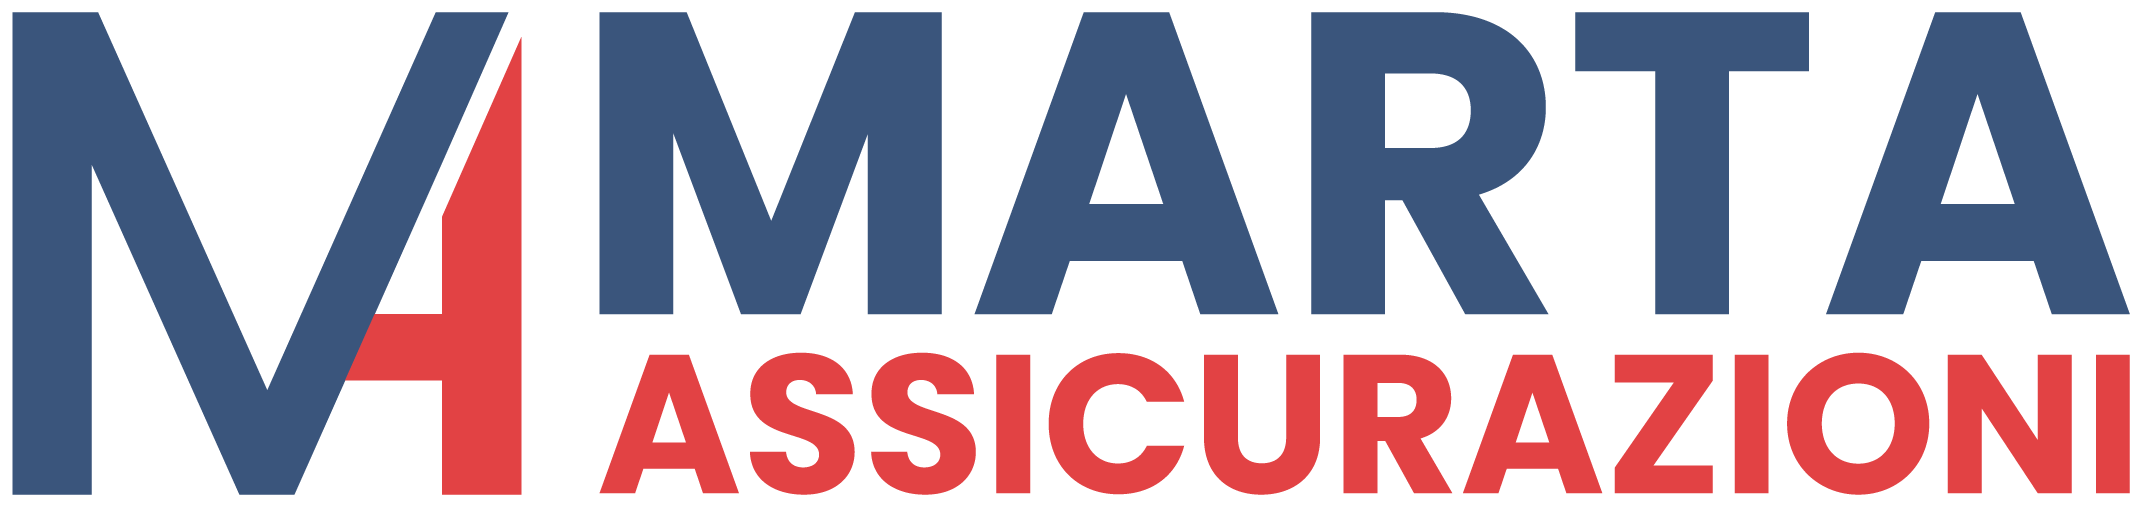 Marta Assicurazioni - logo